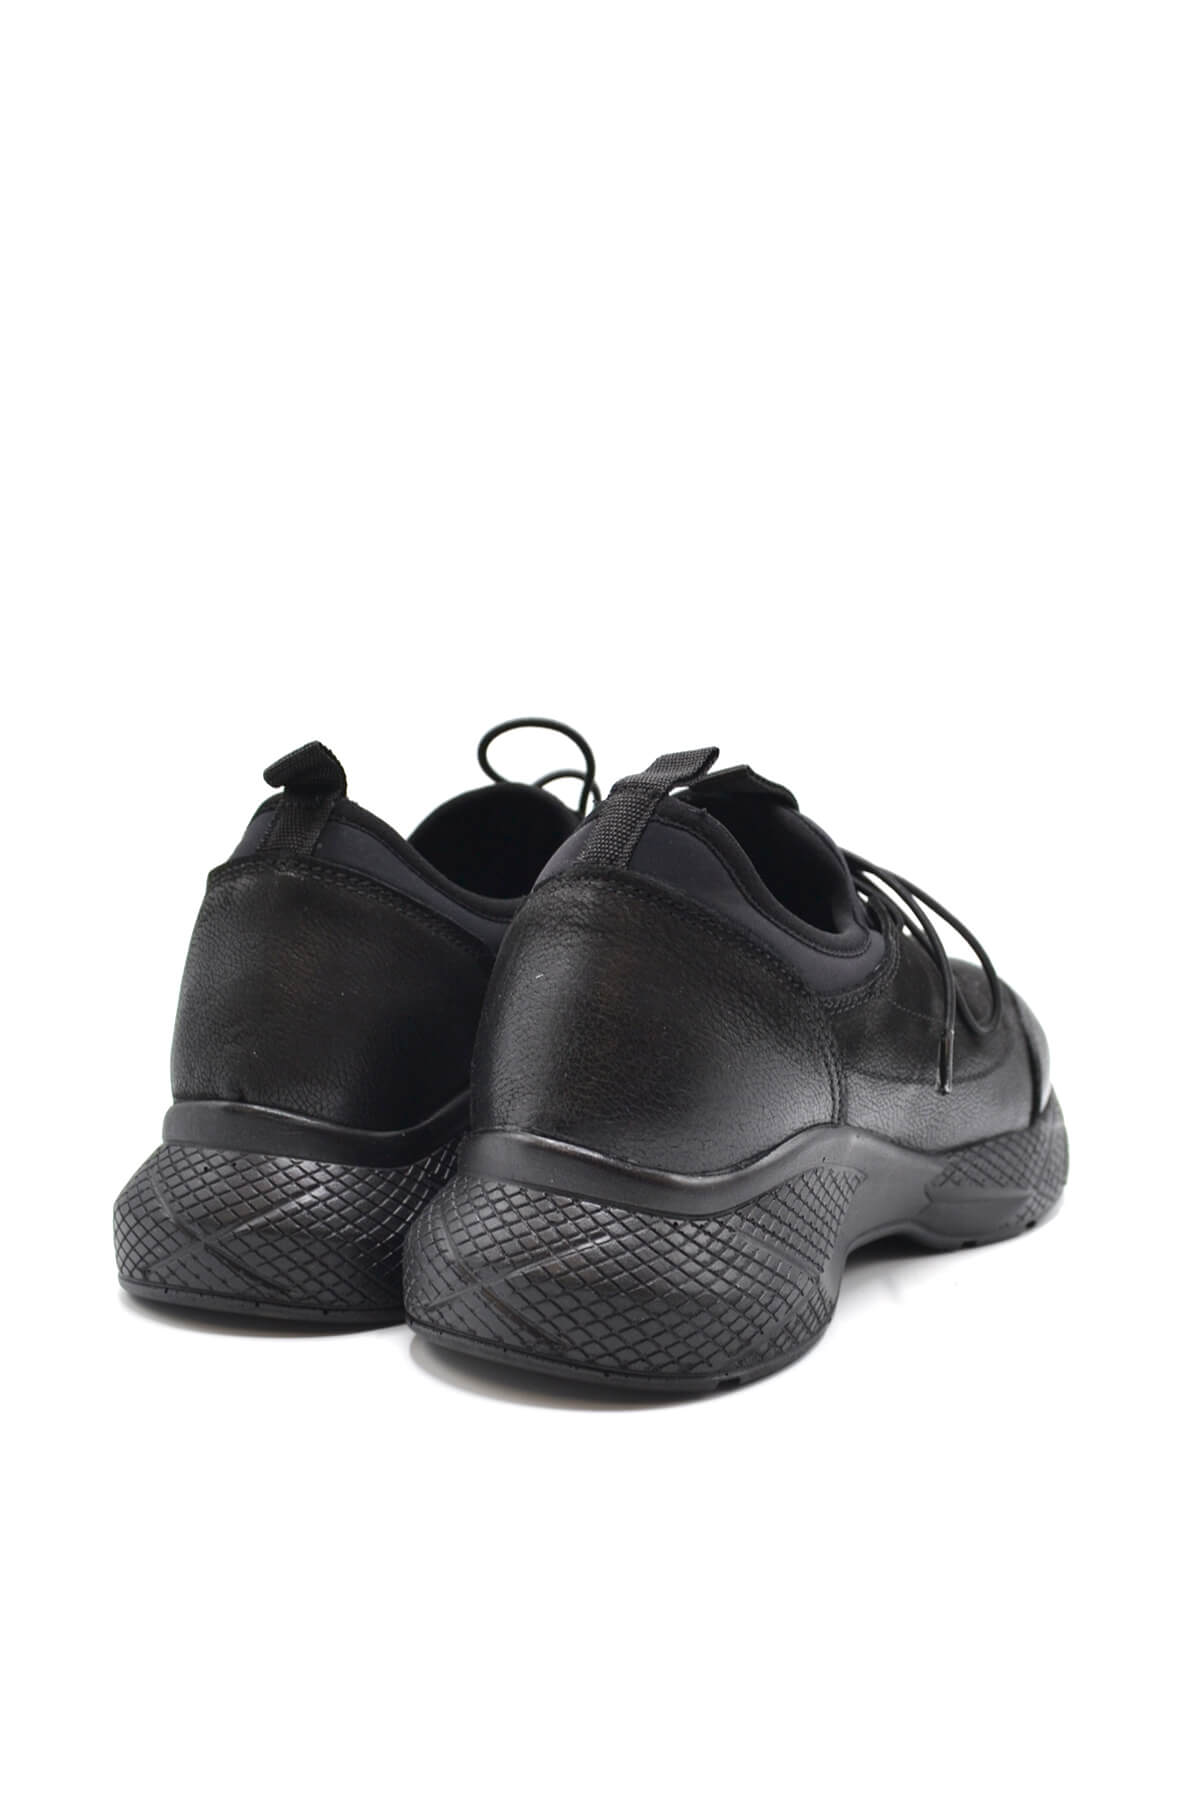 Kadın Comfort Deri Sneakers Airflow Ayakkabı Siyah 2216603K